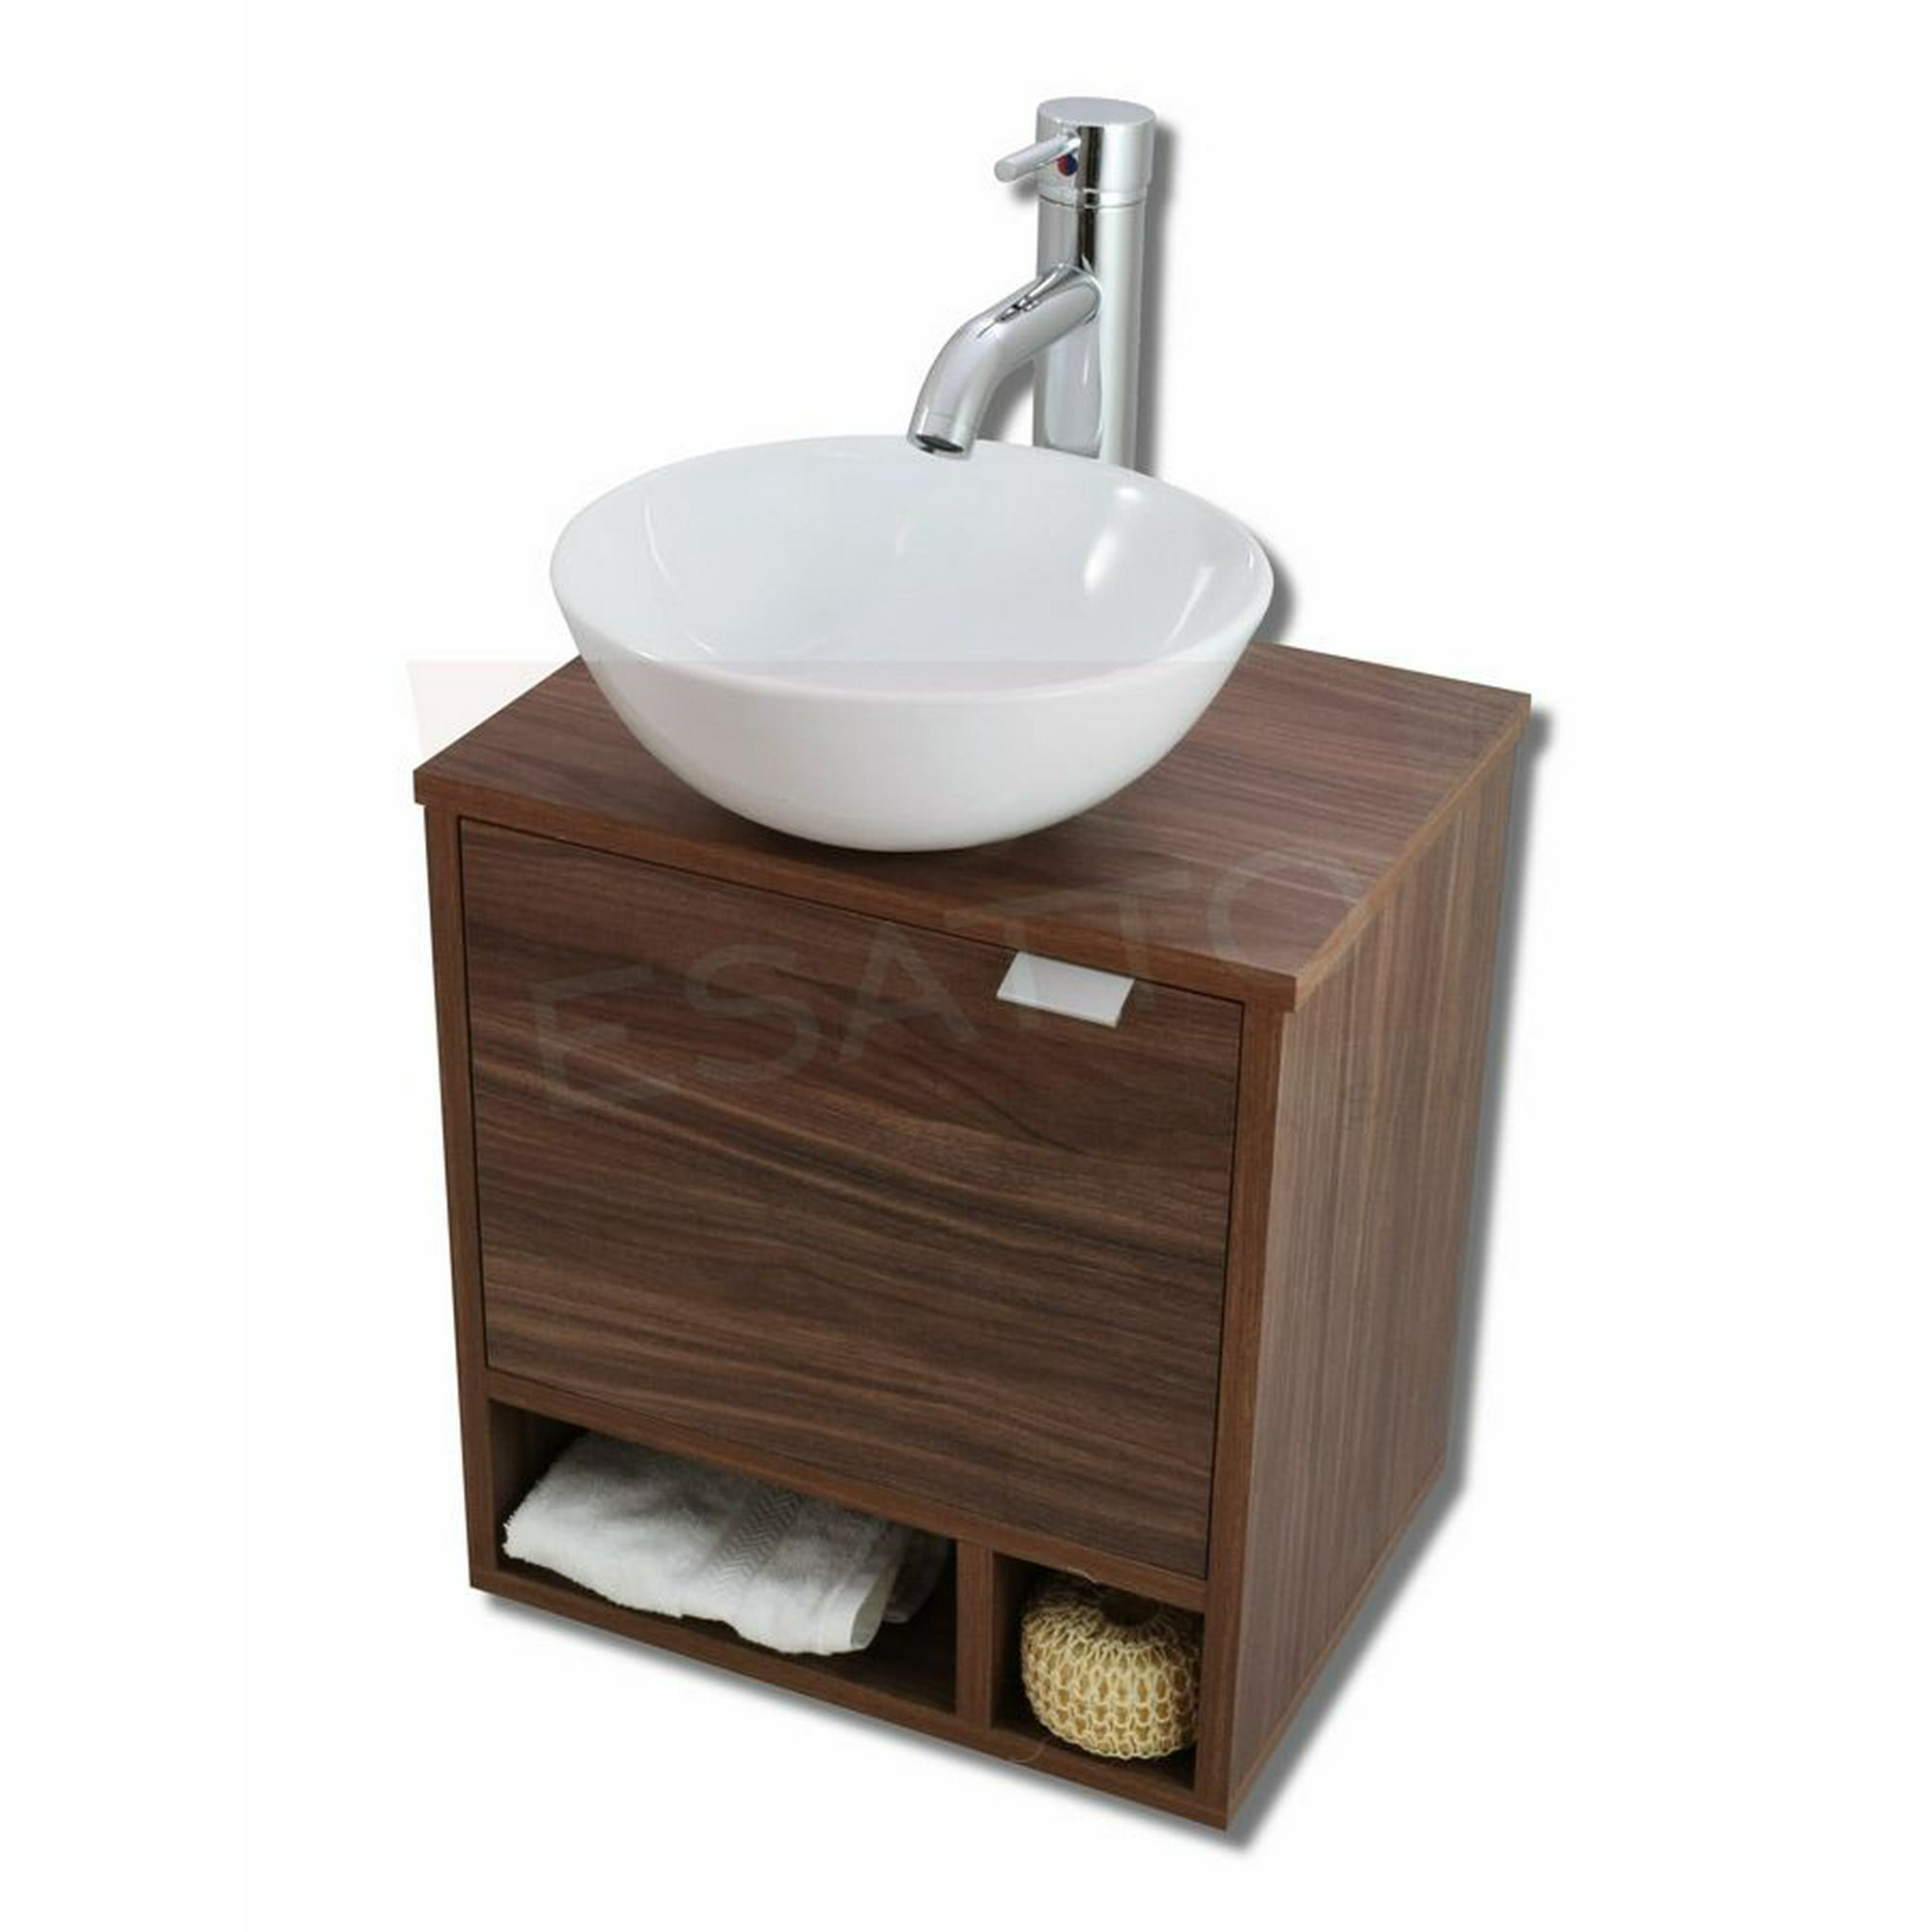 Esatto® mueble para baño dcnb klein con lavabo, llave y desagües esatto dcnb klein